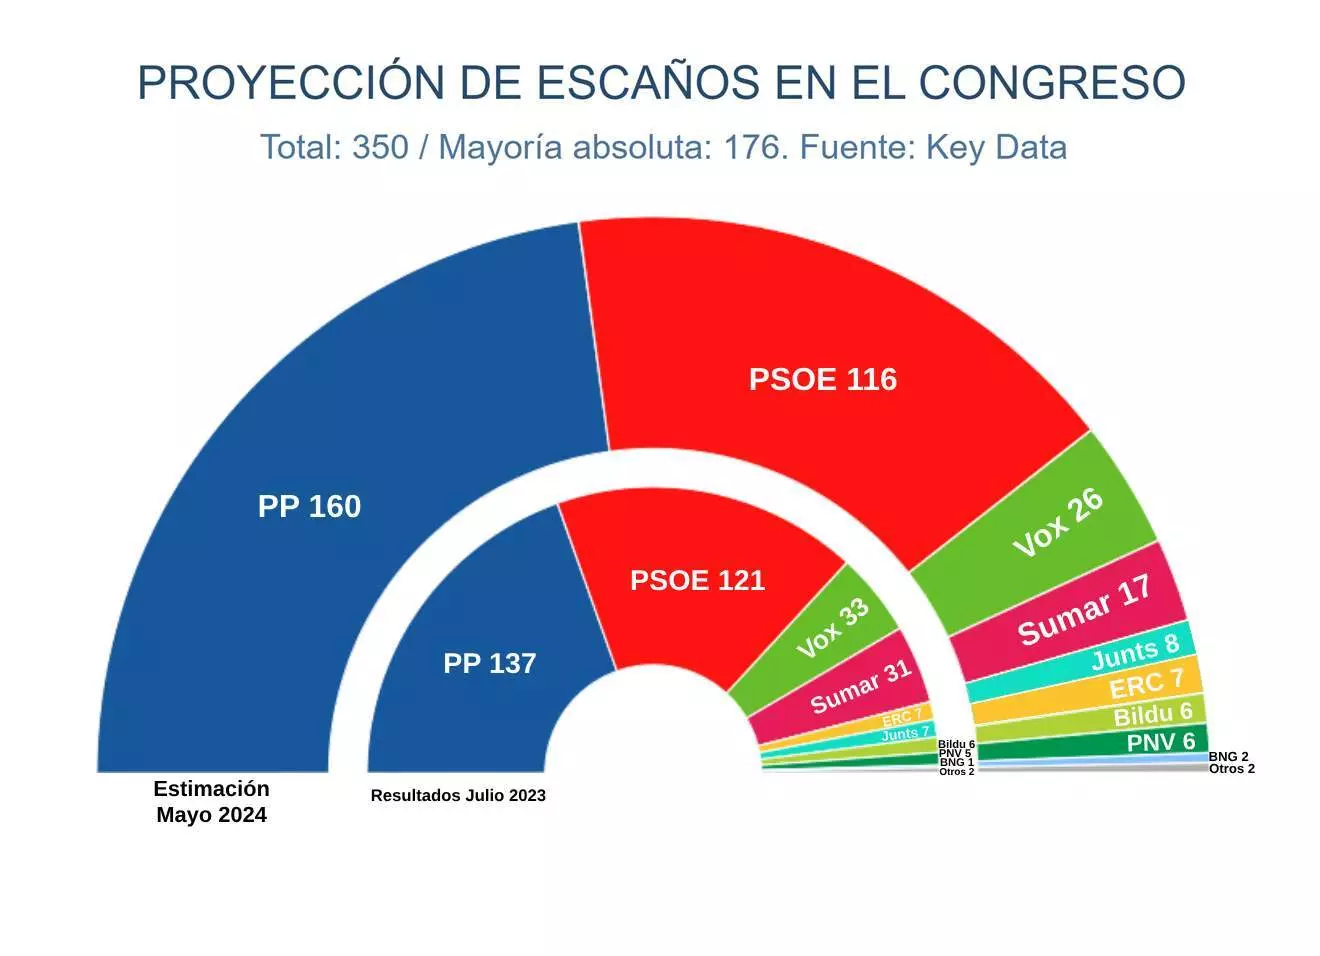 El PSOE sale reforzado tras el periodo de reflexión de Sánchez y el crecimiento del PP se frena